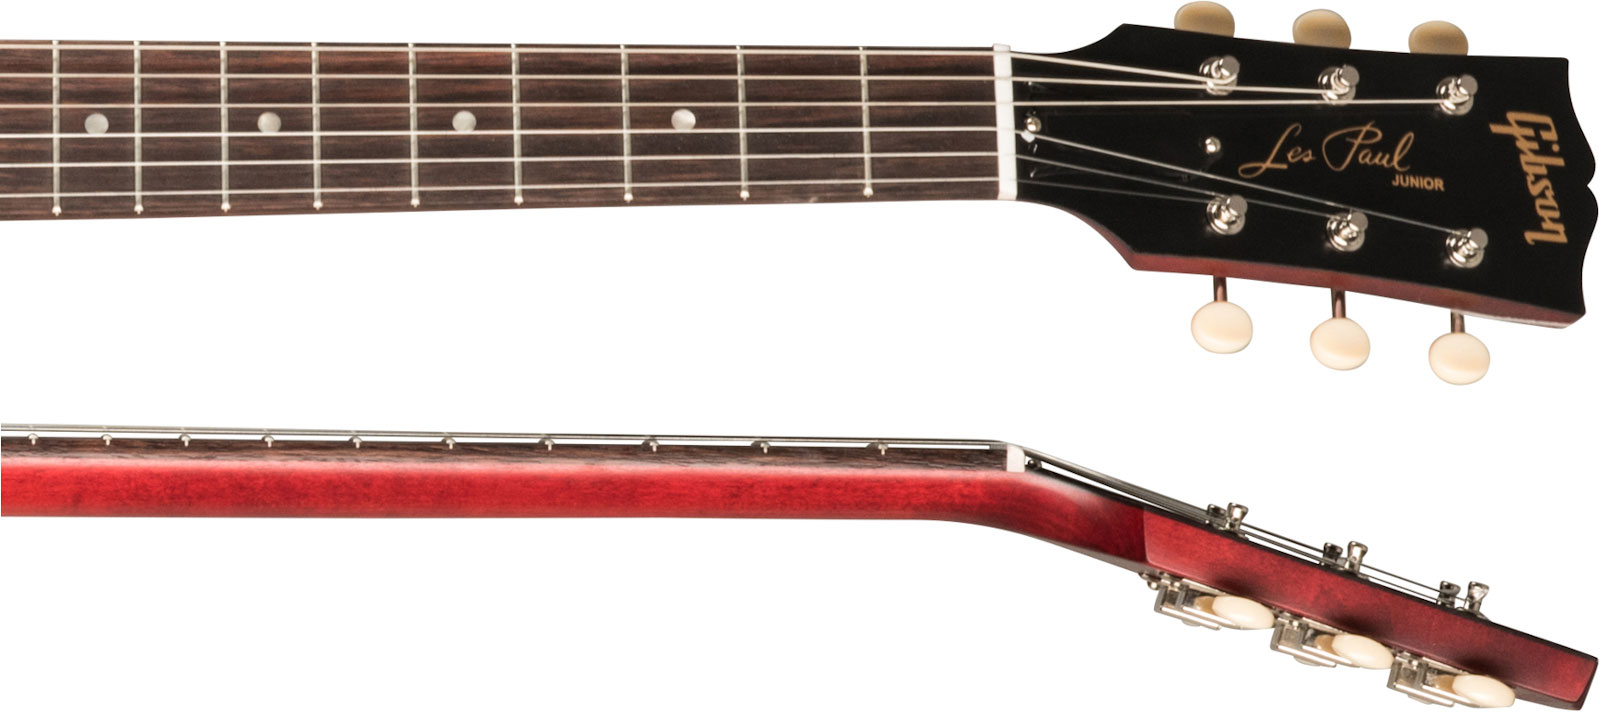 Gibson Les Paul Junior Tribute Dc Modern P90 - Worn Cherry - Guitarra eléctrica de doble corte - Variation 3